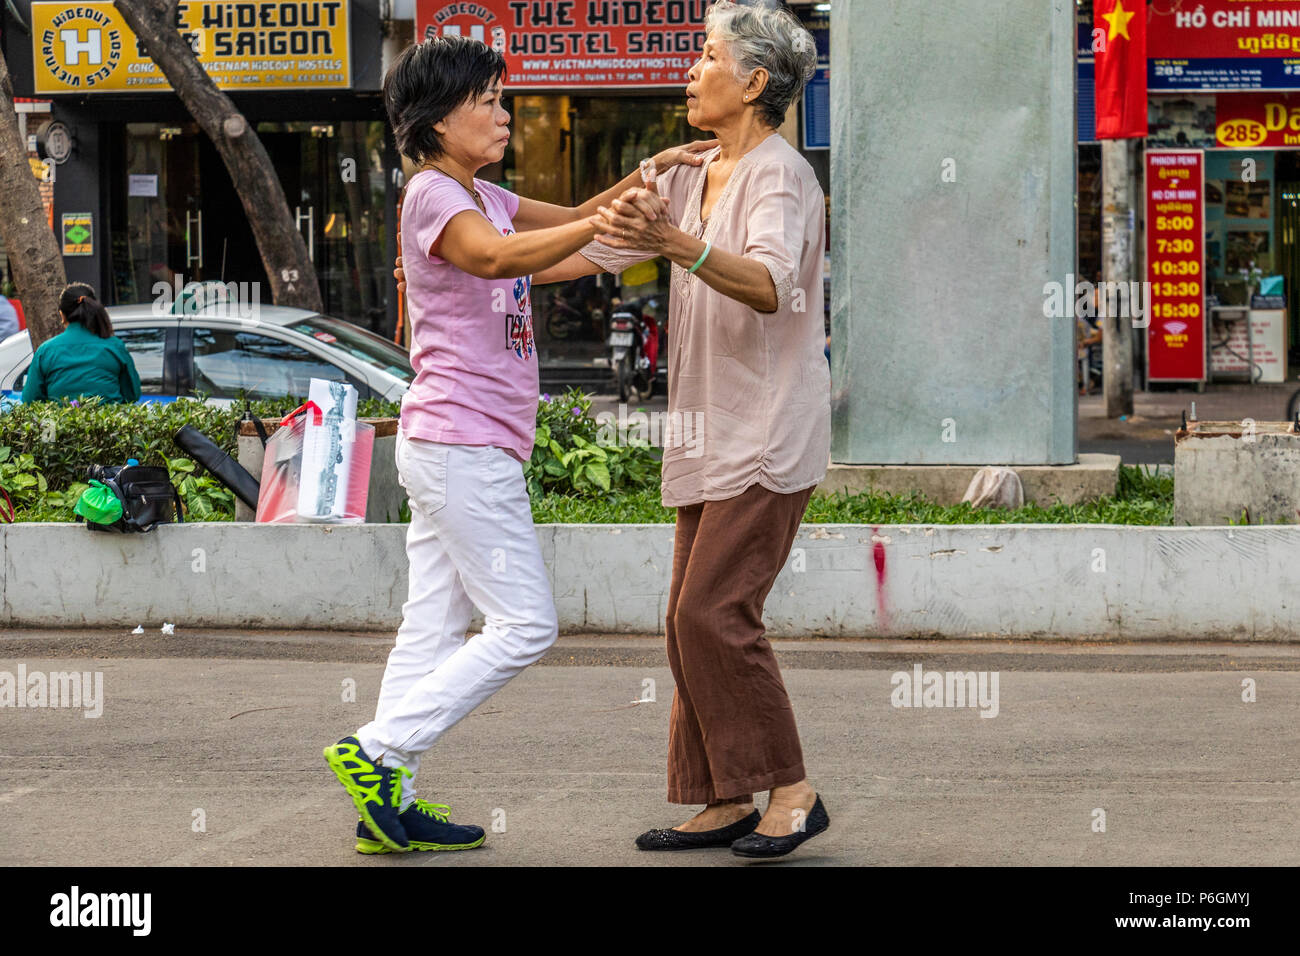 Parc du 23 septembre Ho Chi Minh (Saigon) série d'événements a lieu Badminton,garder la forme,musculation et des leçons de danse pour ne citer que quelques uns. Banque D'Images